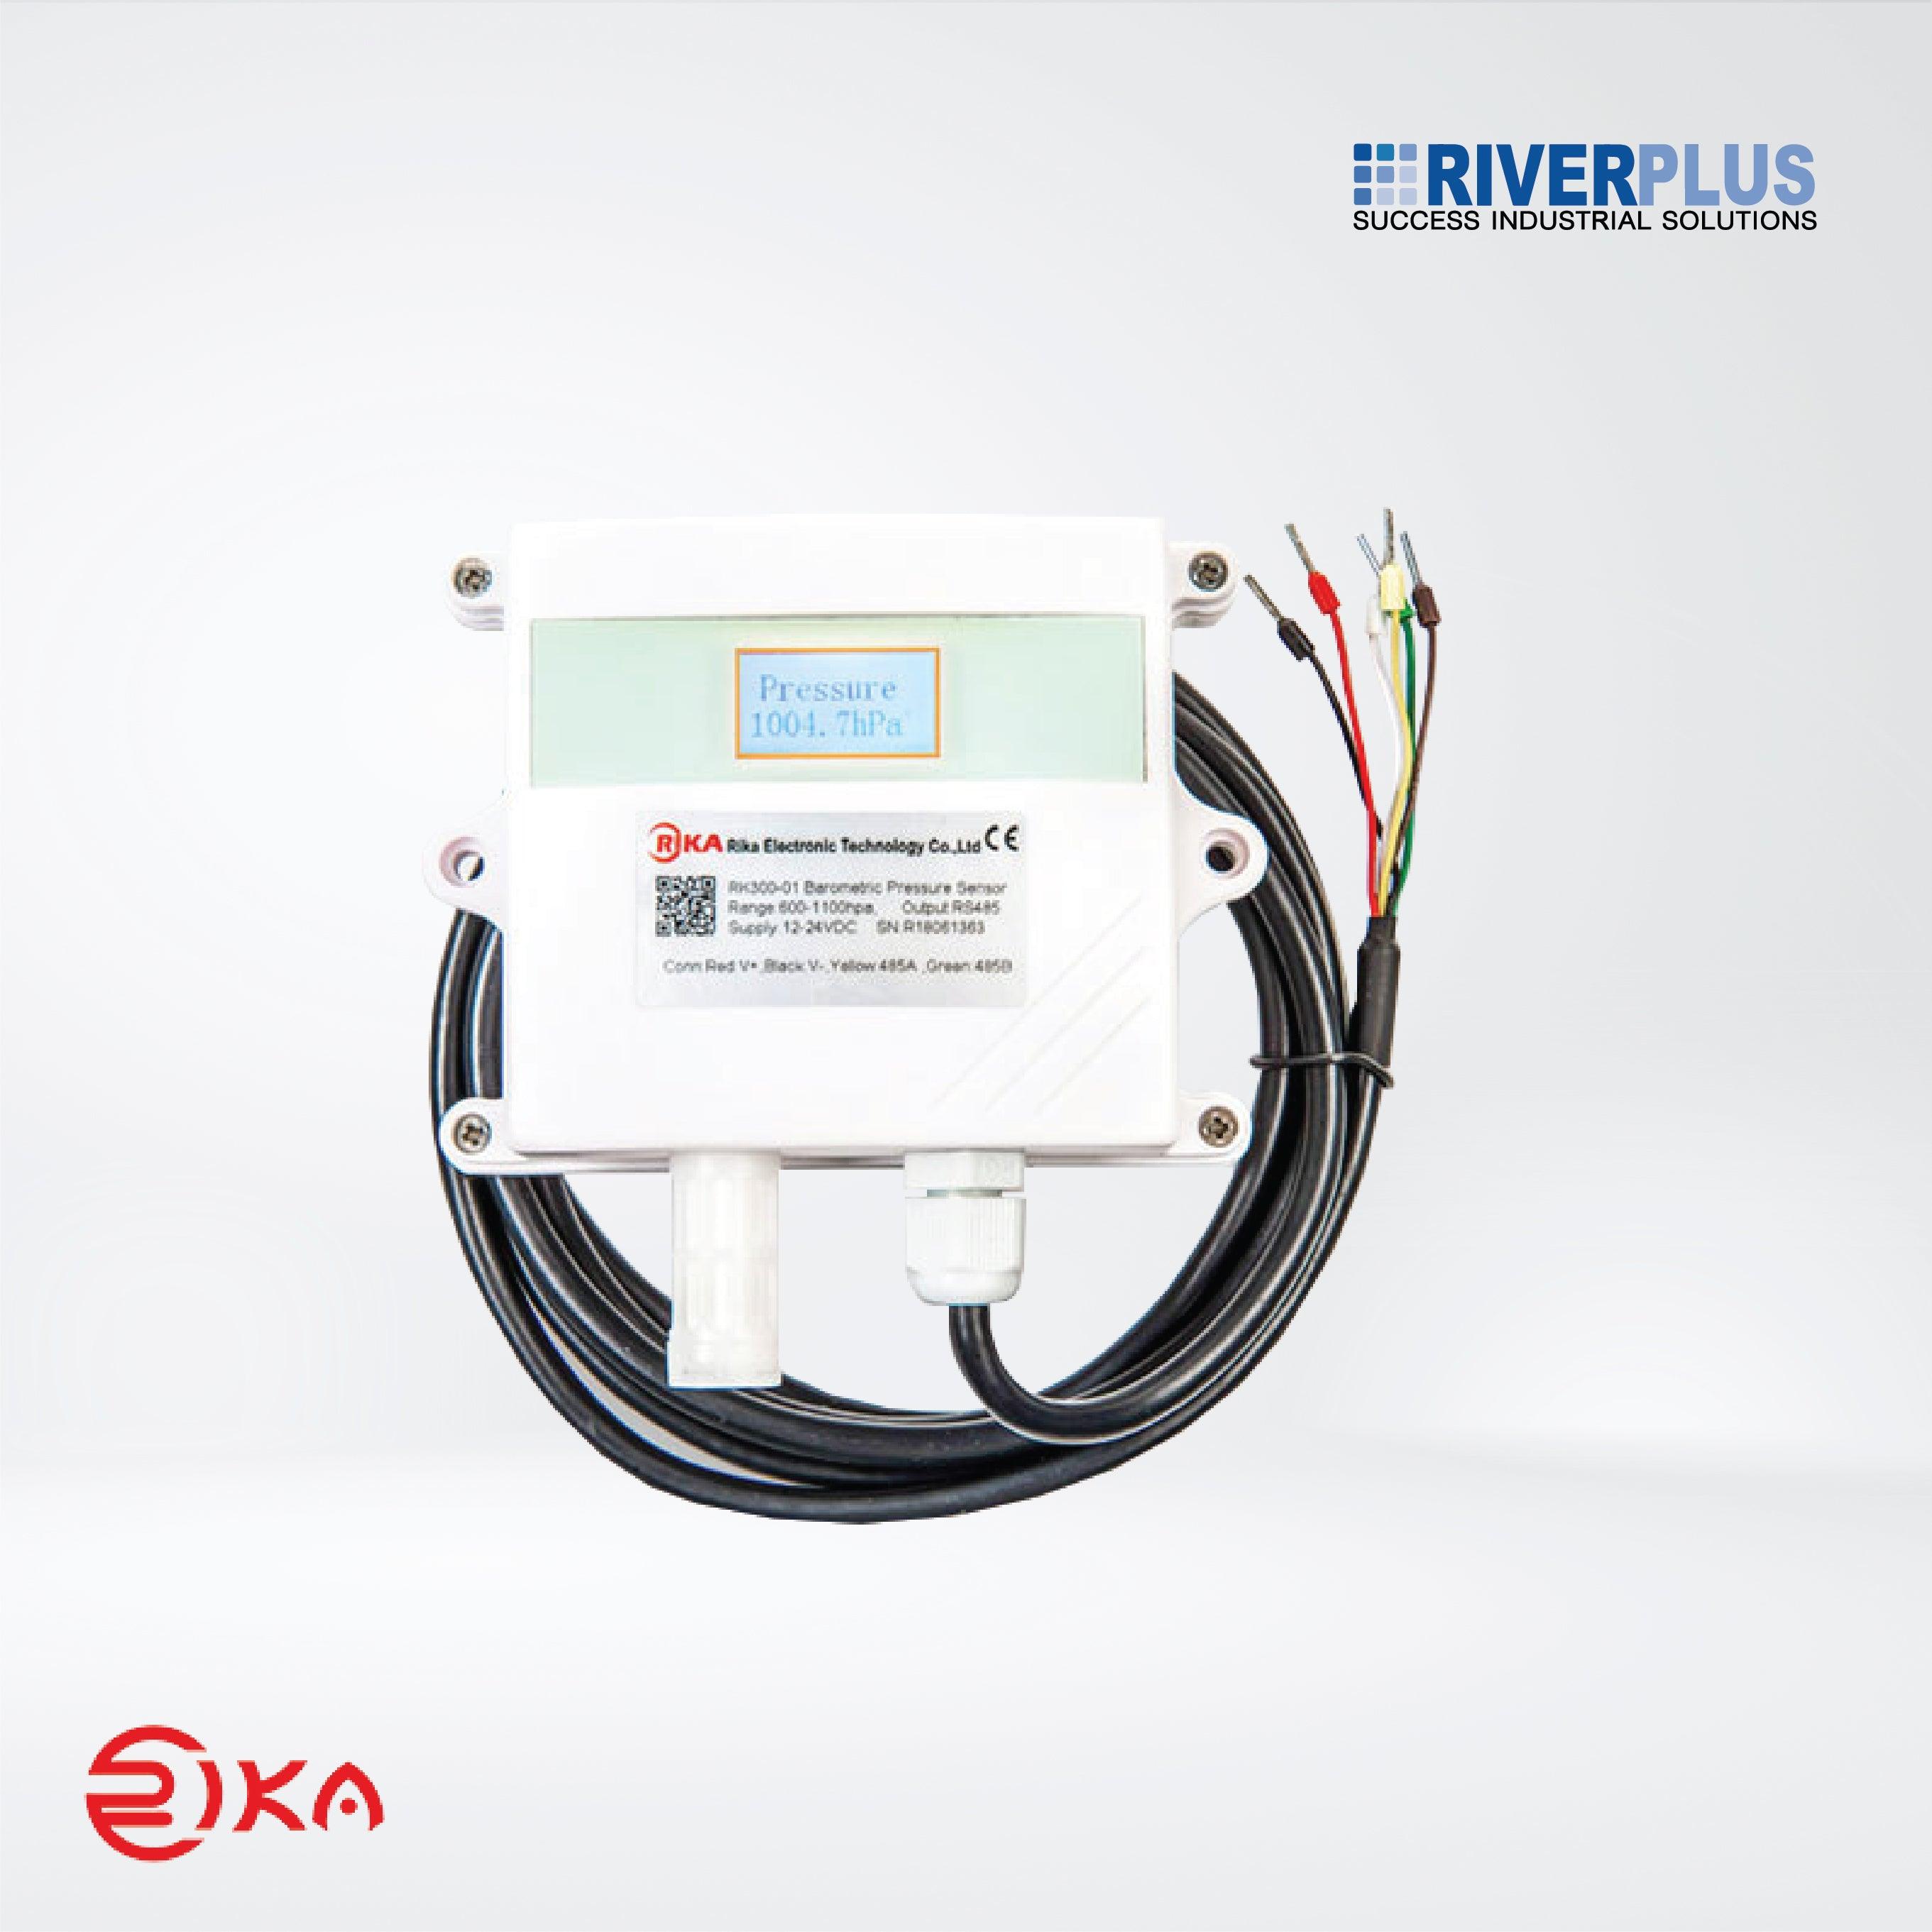 RK300-01 Wall-mounted Barometric Air Pressure Sensor - Riverplus